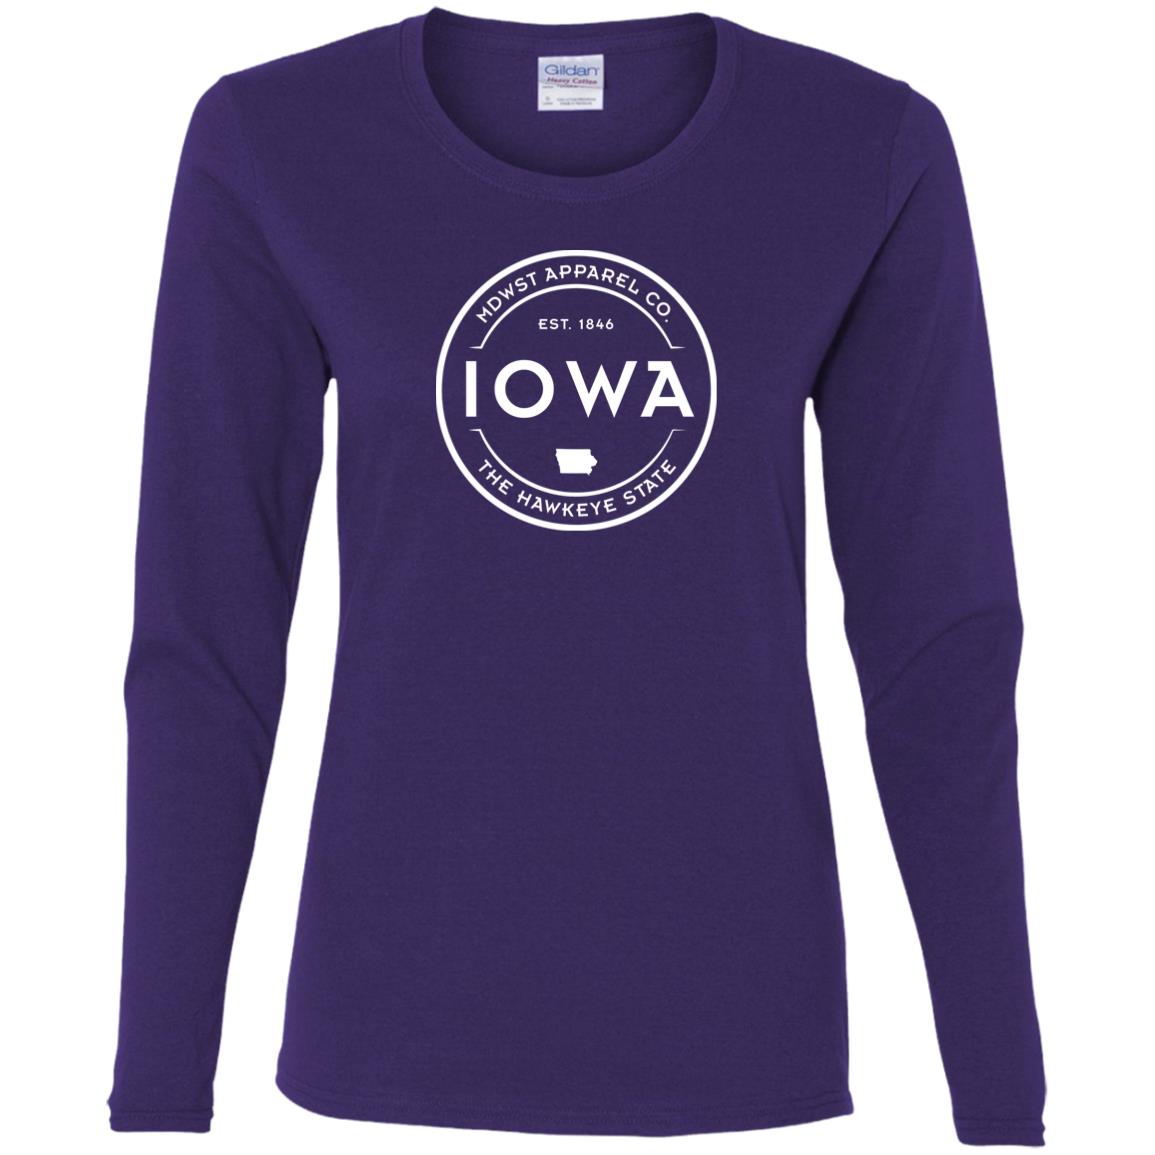 Iowa Crest Ladies' Cotton LS T-Shirt